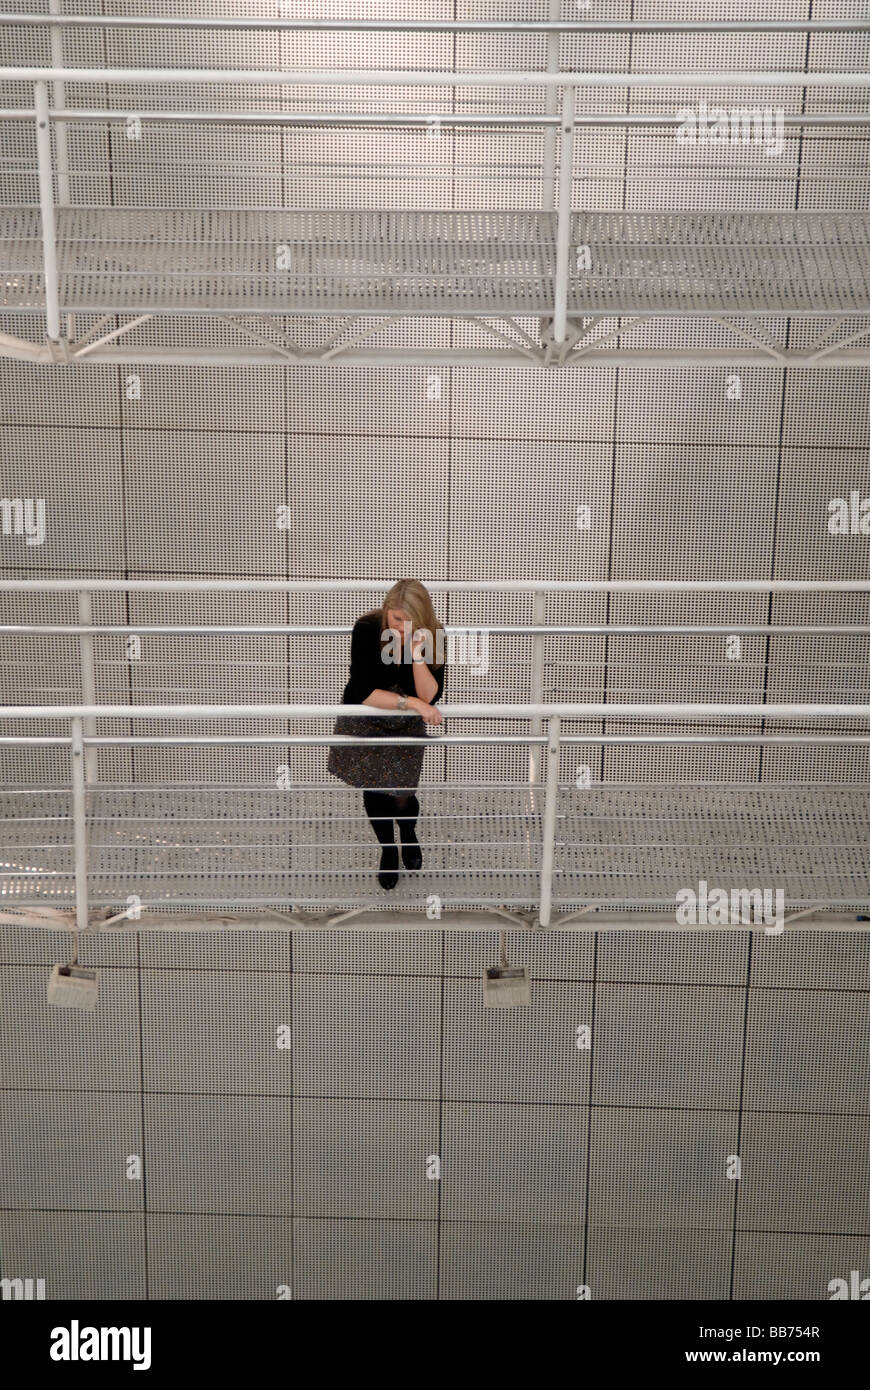 Femme debout sur la passerelle en acier entre les bâtiments de parler sur son téléphone portable, Londres, Angleterre Banque D'Images